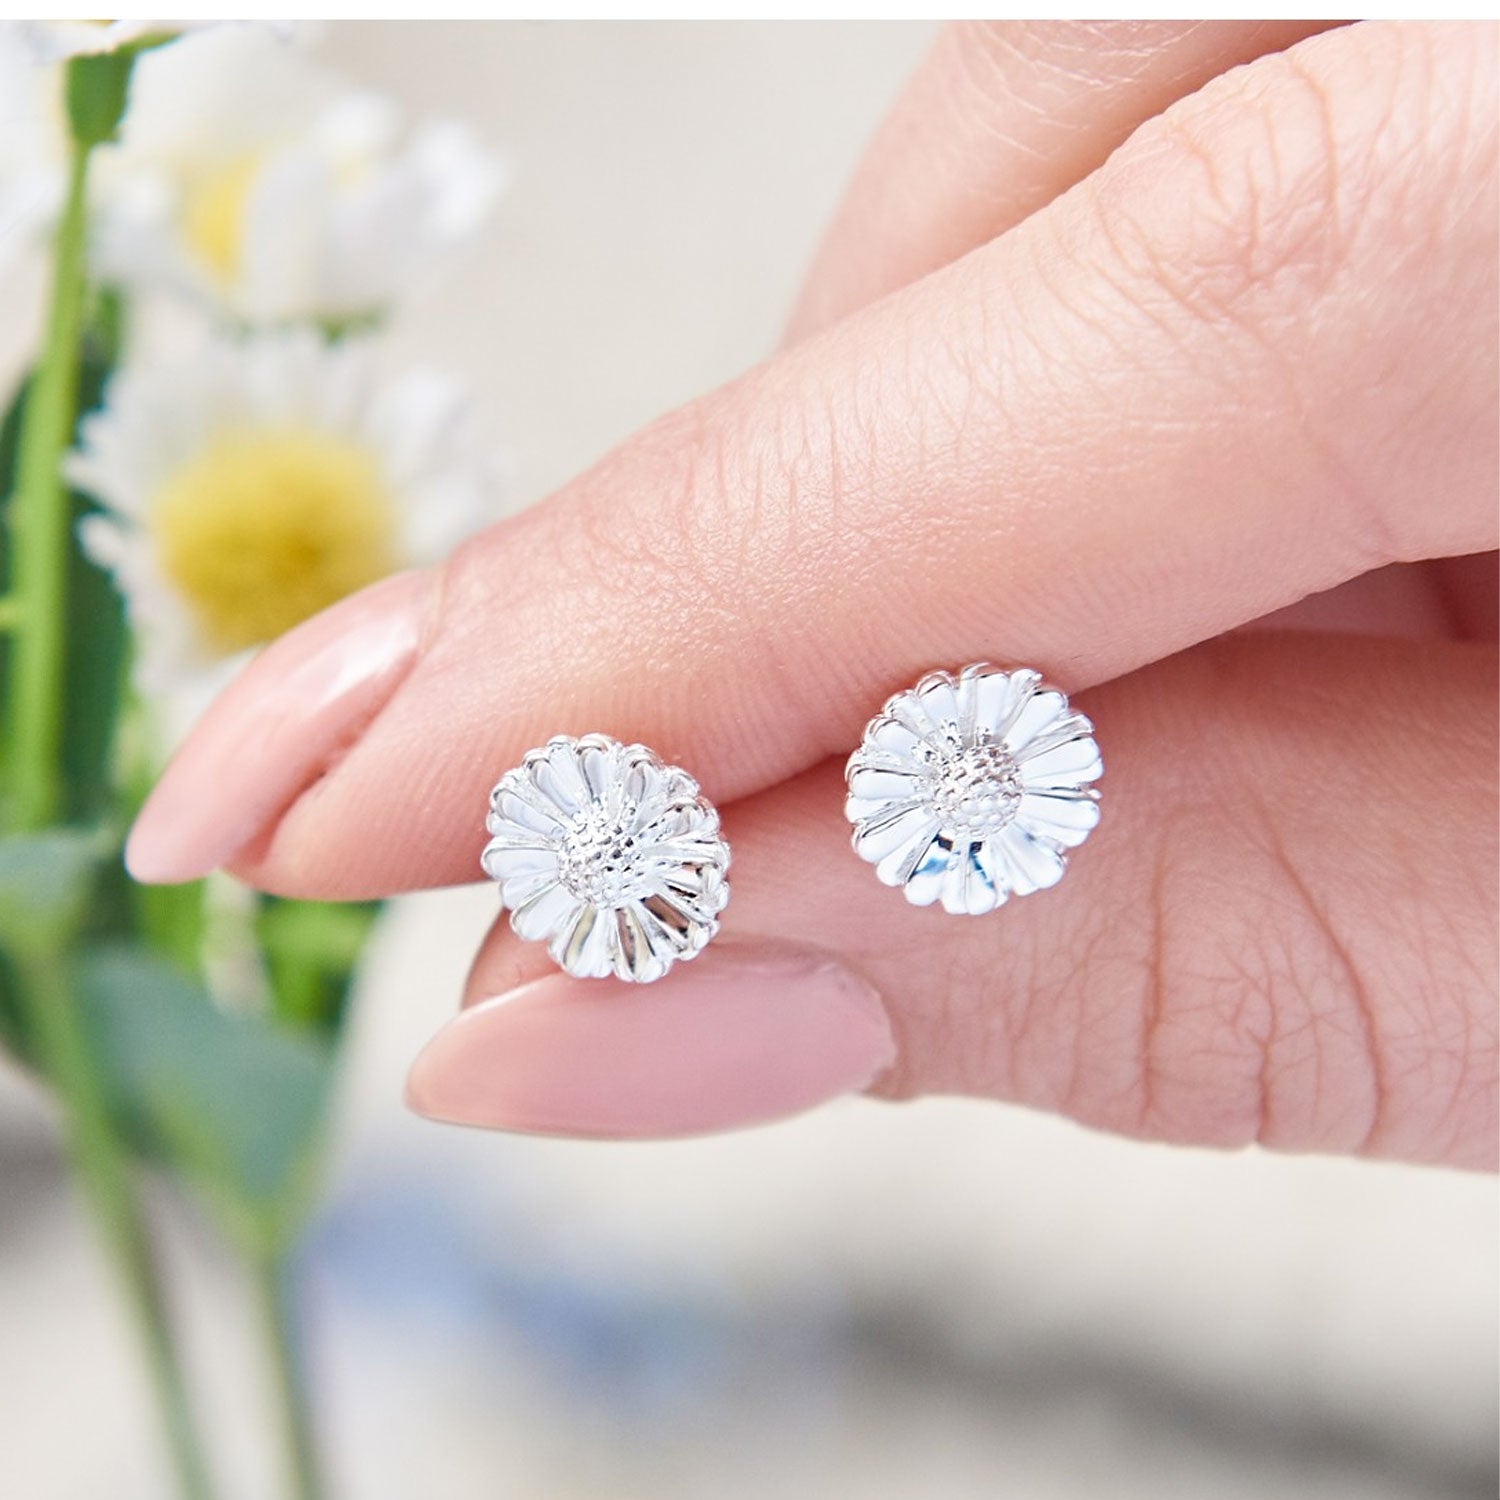 silver daisy stud earrings UK designer scarlett jewellery.jpg